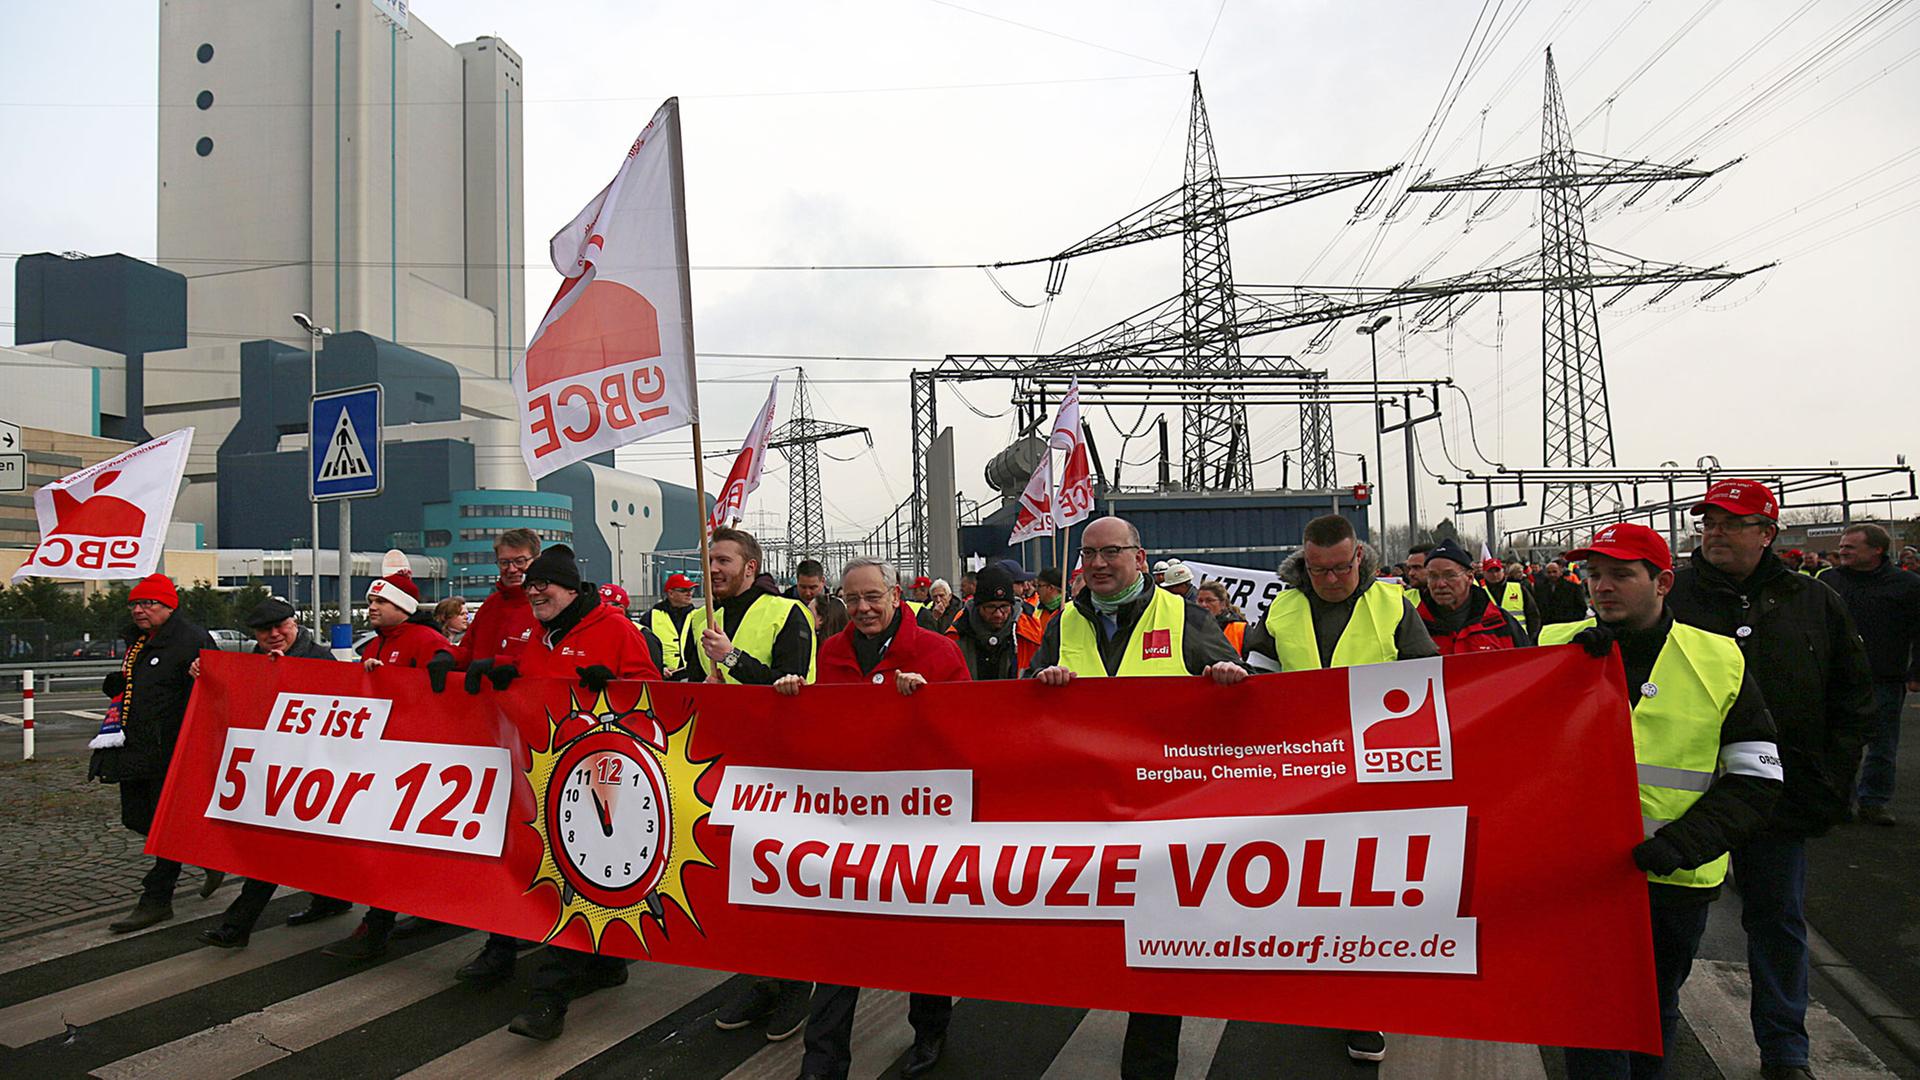 Gewerkschafter der IGBCE (Industriegewerkschaft Bergbau, Chemie, Energie) demonstrieren am 01.12.2017 in Bergheim (Nordrhein-Westfalen) mit einem Transparenten mit der Aufschrift "Es ist 5 vor 12" und "Wir haben die Schnauze voll" vor dem Kraftwerk Niederaußem.